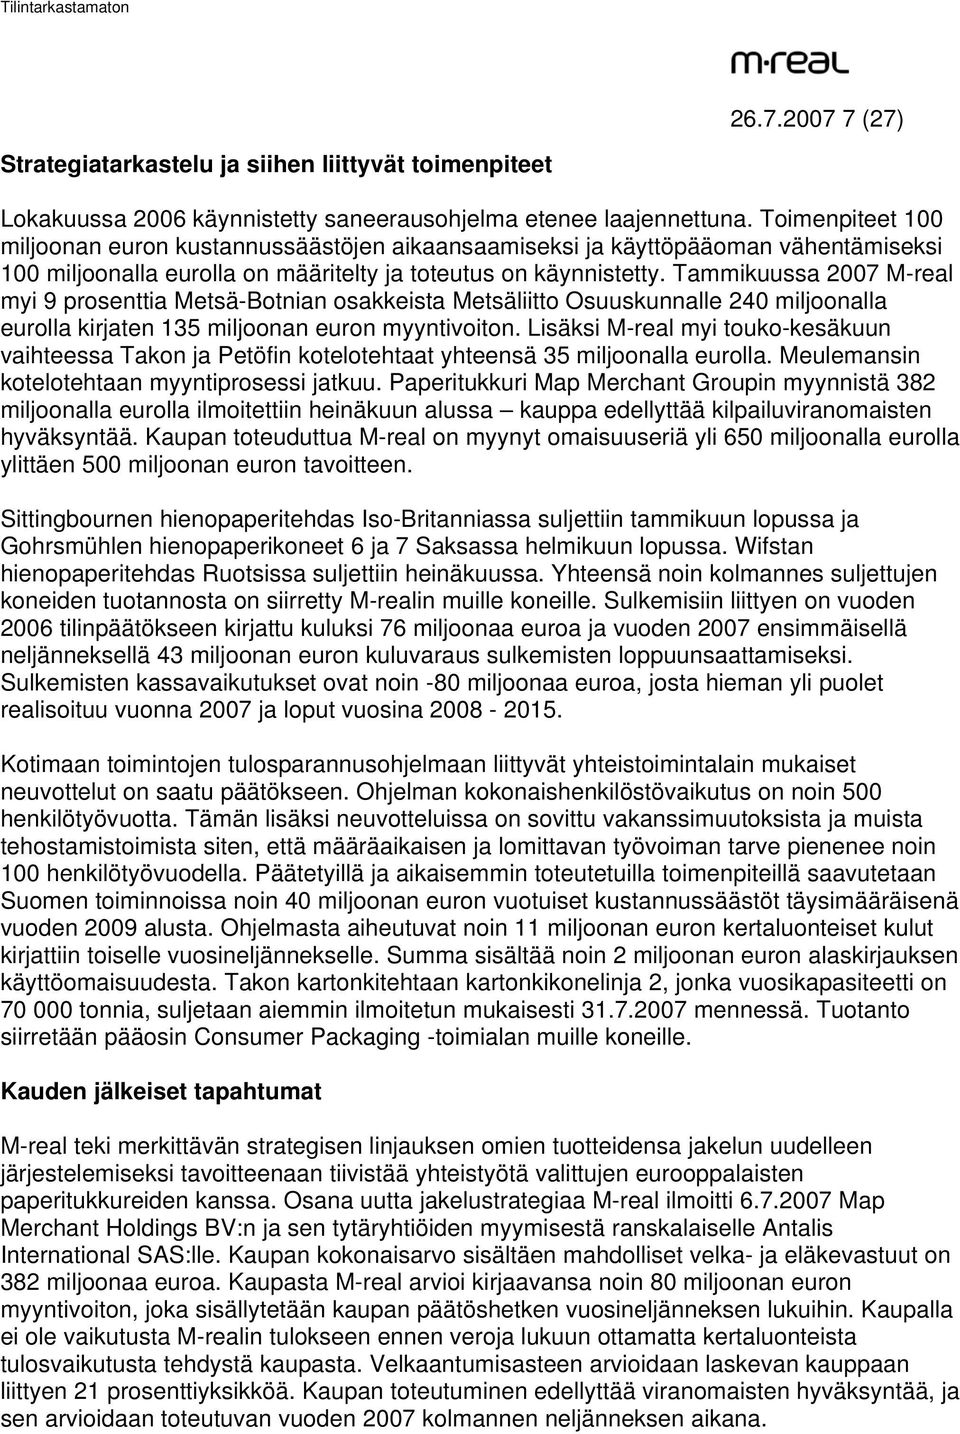 Tammikuussa 2007 M-real myi 9 prosenttia Metsä-Botnian osakkeista Metsäliitto Osuuskunnalle 240 miljoonalla eurolla kirjaten 135 miljoonan euron myyntivoiton.